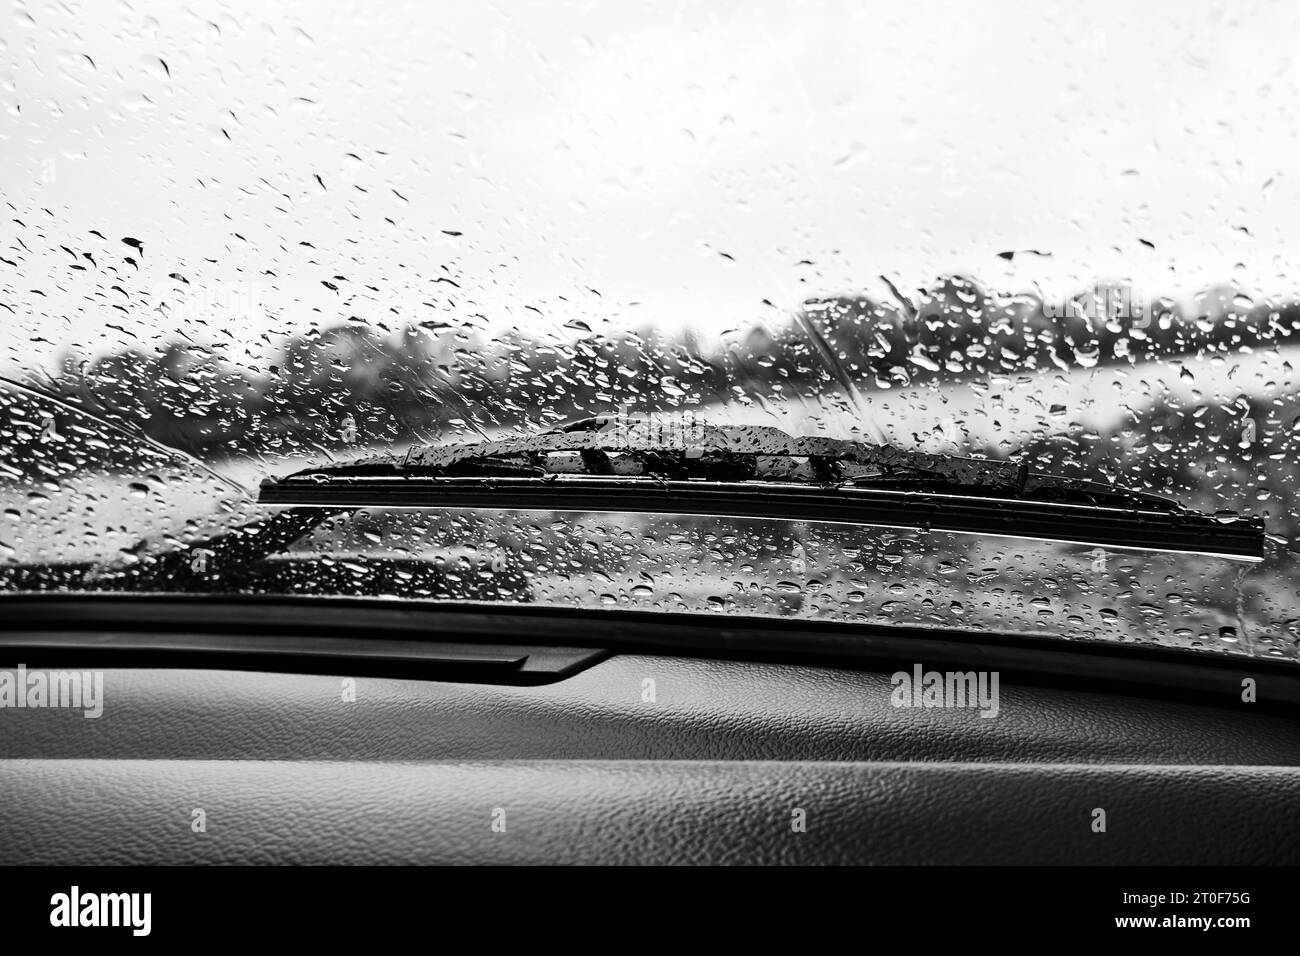 Gouttes de pluie sur le pare-brise d'une voiture, vue de l'intérieur. Photo noir et blanc Banque D'Images